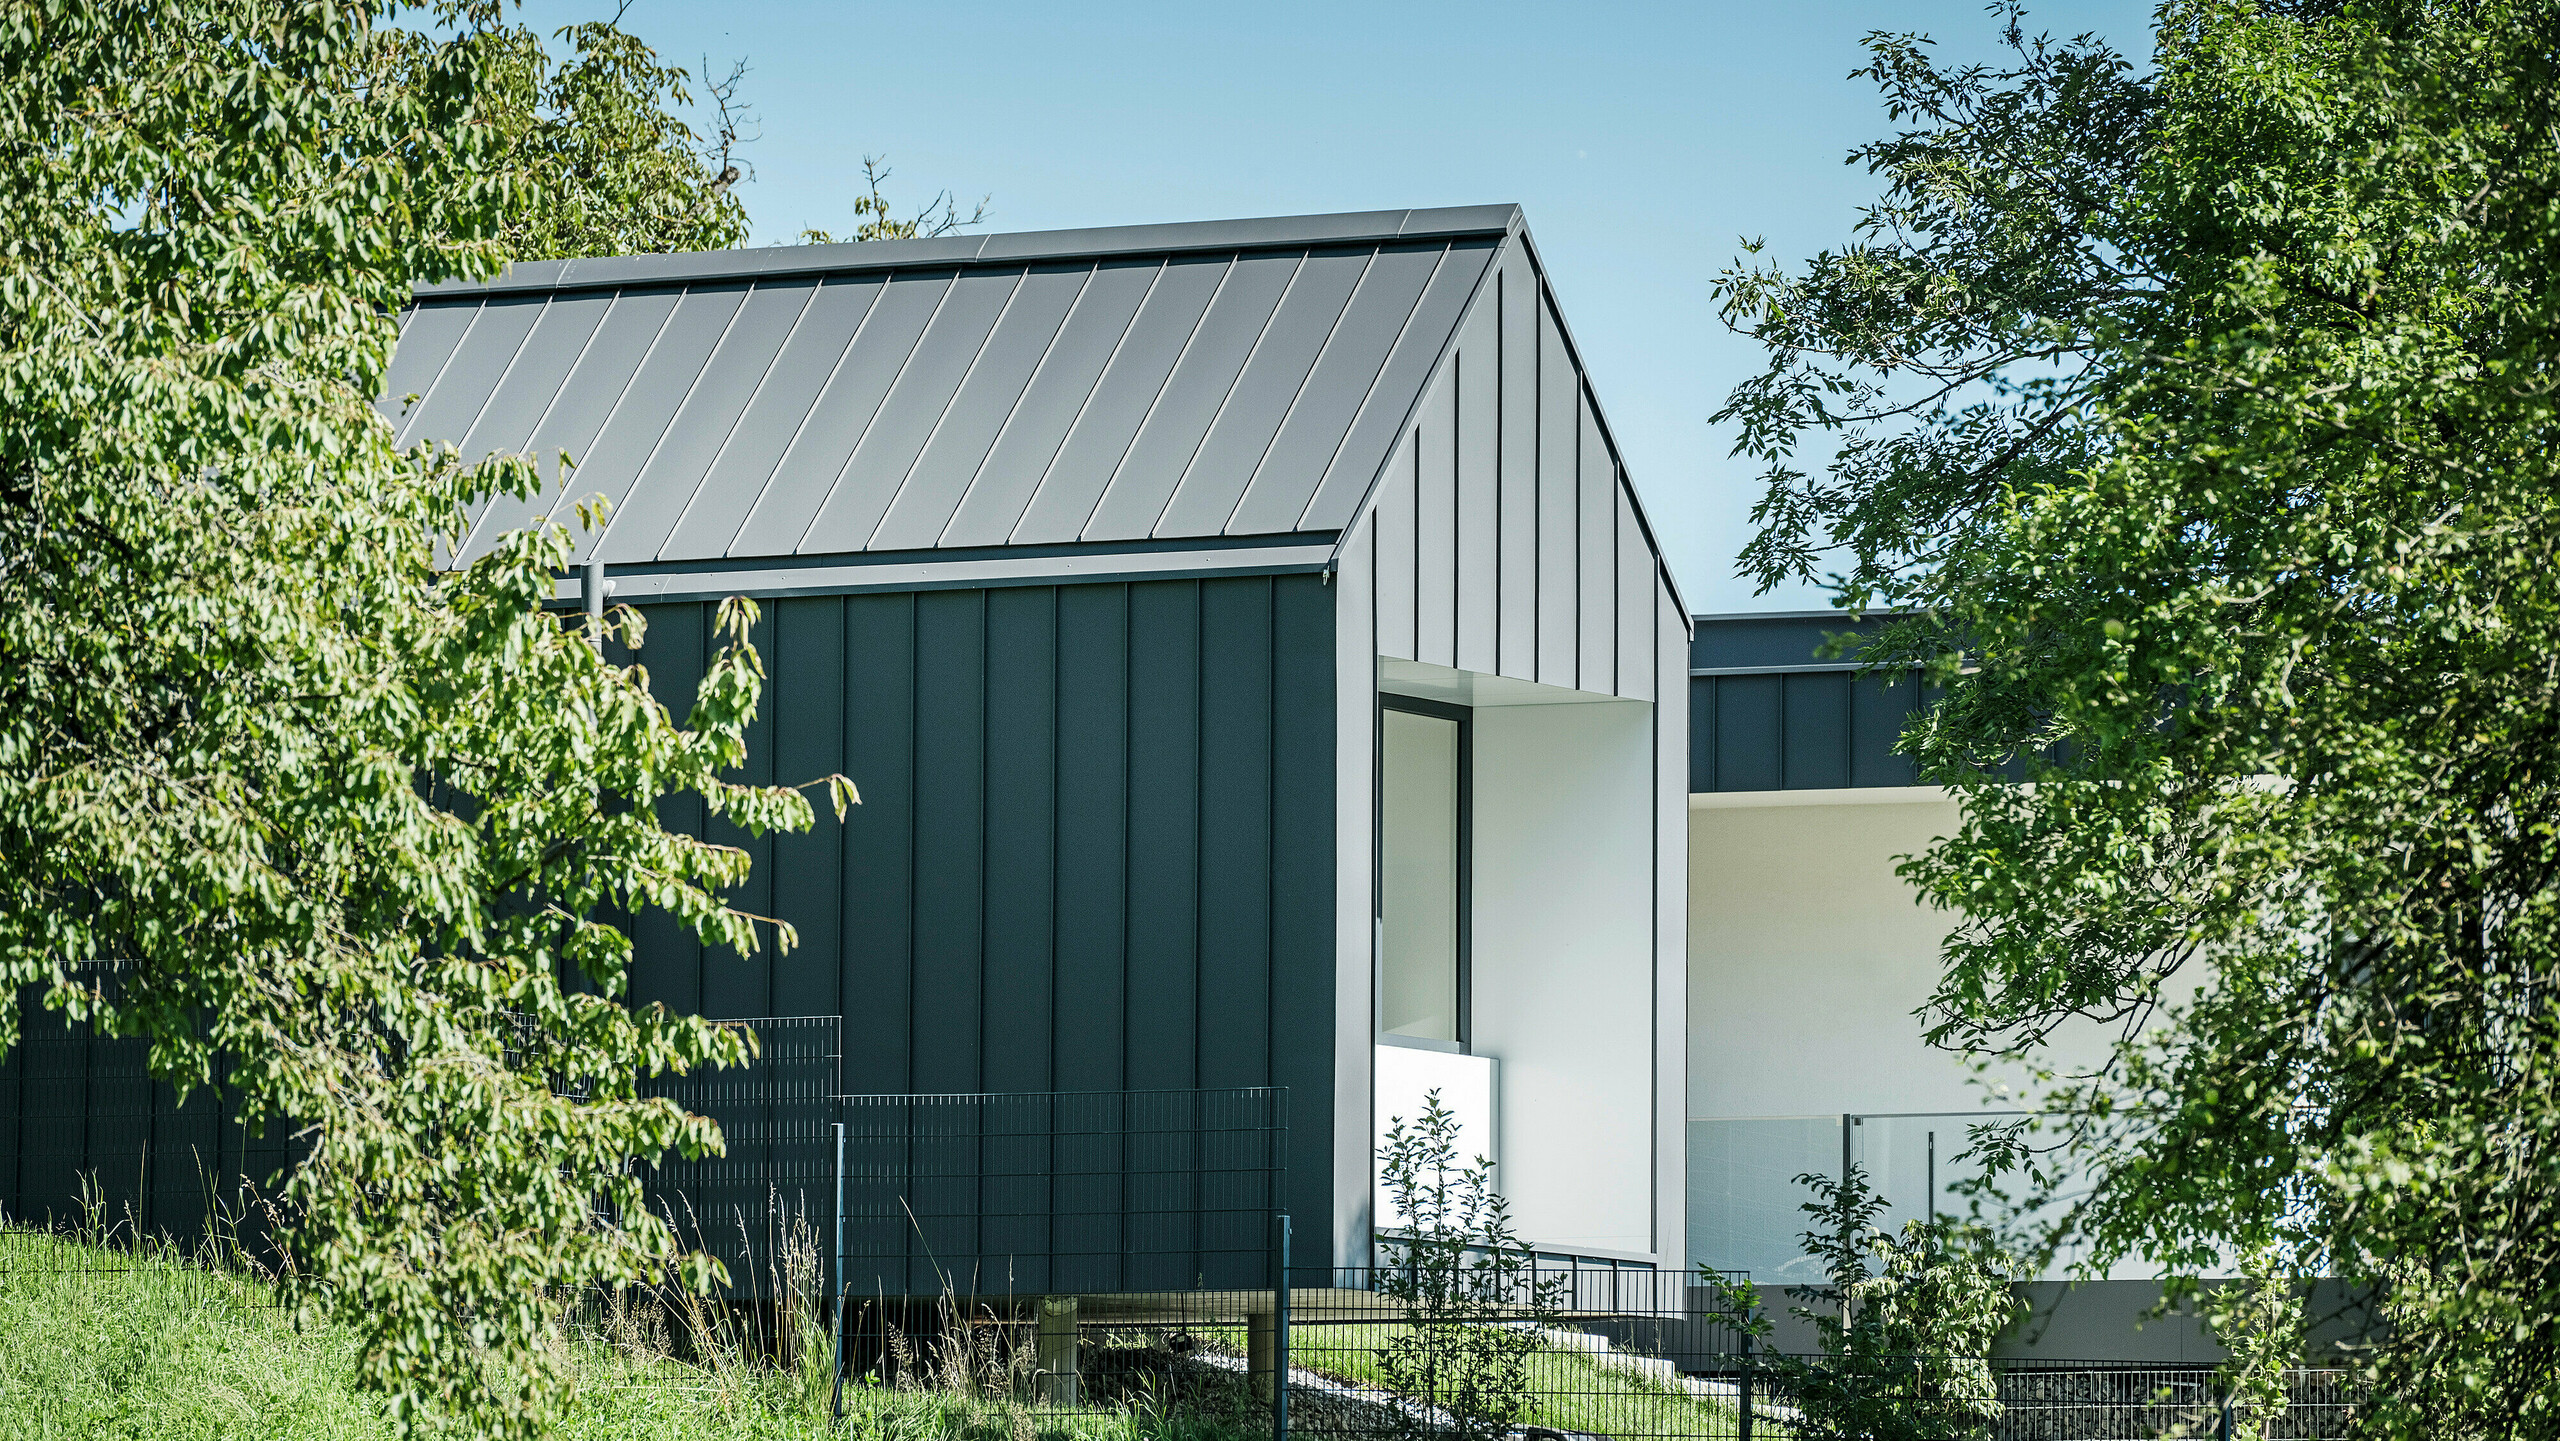 Pohľad cez sviežu zeleň na rodinný dom v rakúskom Pogieri, vybavený strechou a fasádou od firmy PREFA vo farbe tmavošedá P.10. Čisté línie a tmavé farby hliníkových prvkov vytvárajú elegantný kontrast k svetle omietnutej fasáde krytých priestorov a okolitej prírody. Loggia ponúka chránený vonkajší priestor, ktorý zdôrazňuje prepojenie vnútra a exteriéru a vytvára príjemnú atmosféru bývania